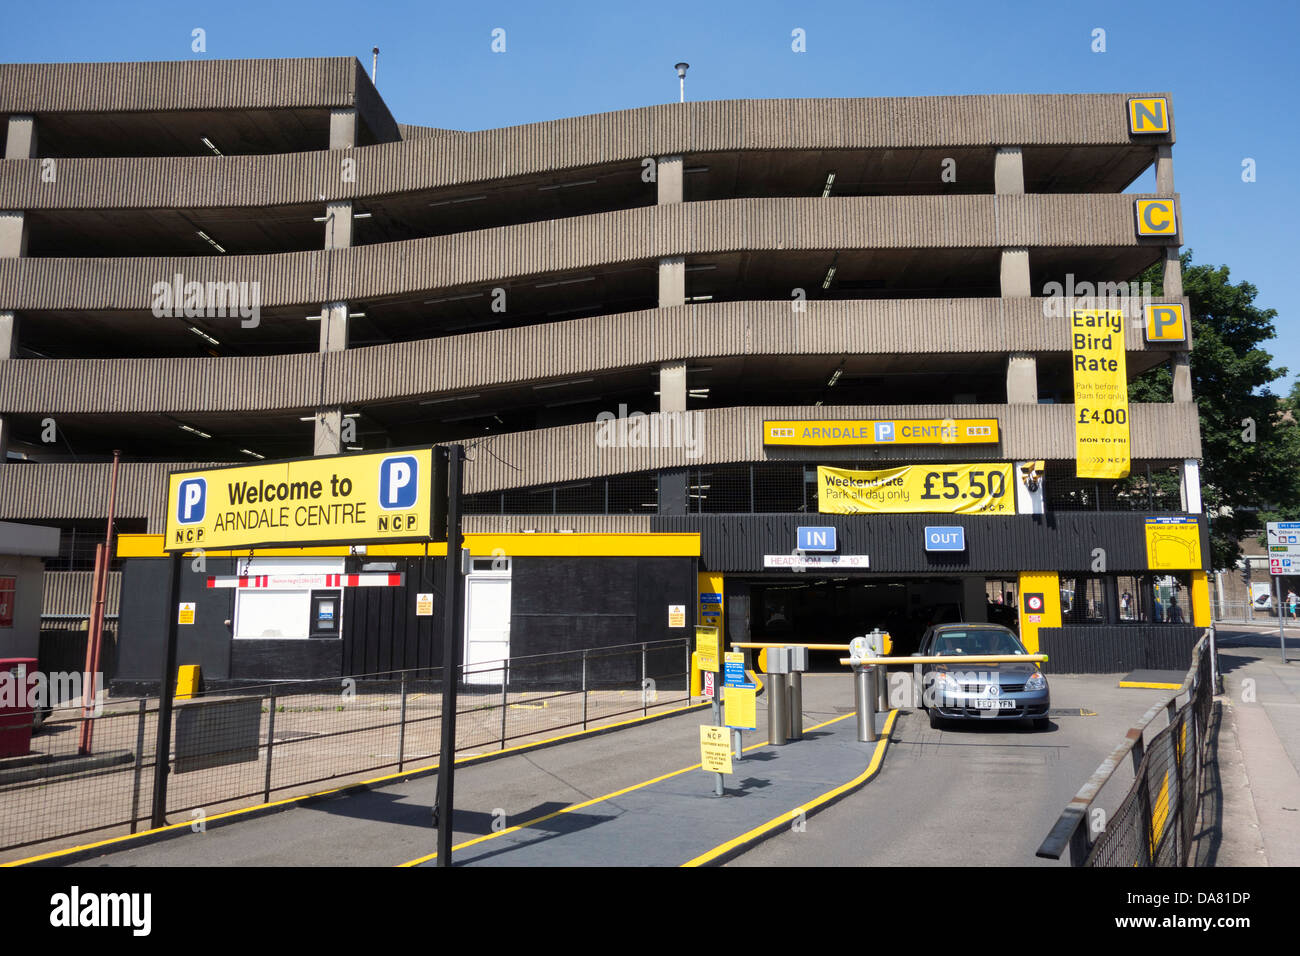 Le PCN parking à étages, Maid Marion, Nottingham, Angleterre, Royaume-Uni Banque D'Images